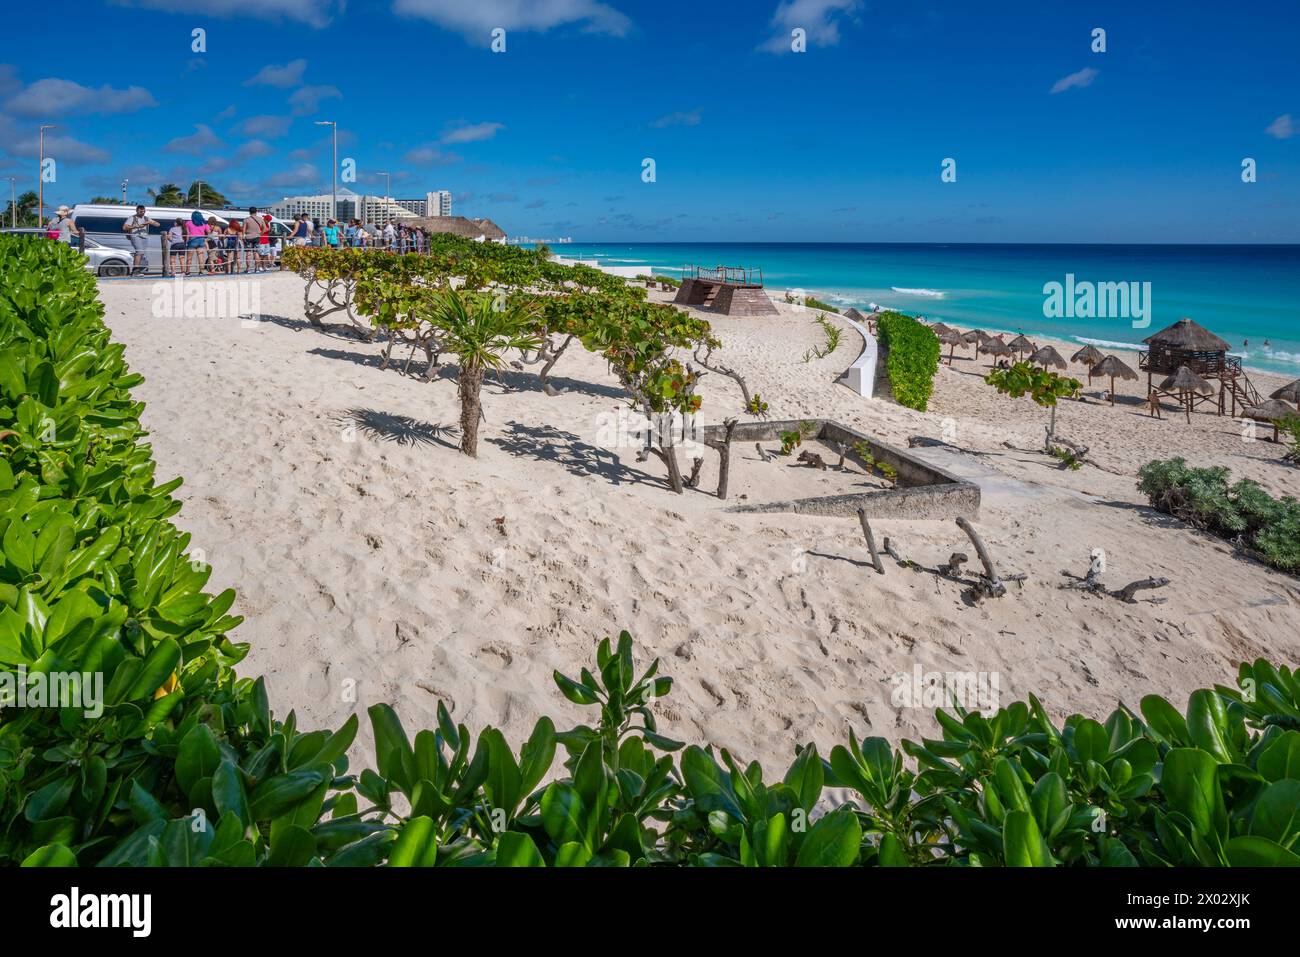 Vista della lunga spiaggia di sabbia bianca a Playa Delfines, zona degli hotel, Cancun, costa caraibica, penisola dello Yucatan, Messico, Nord America Foto Stock